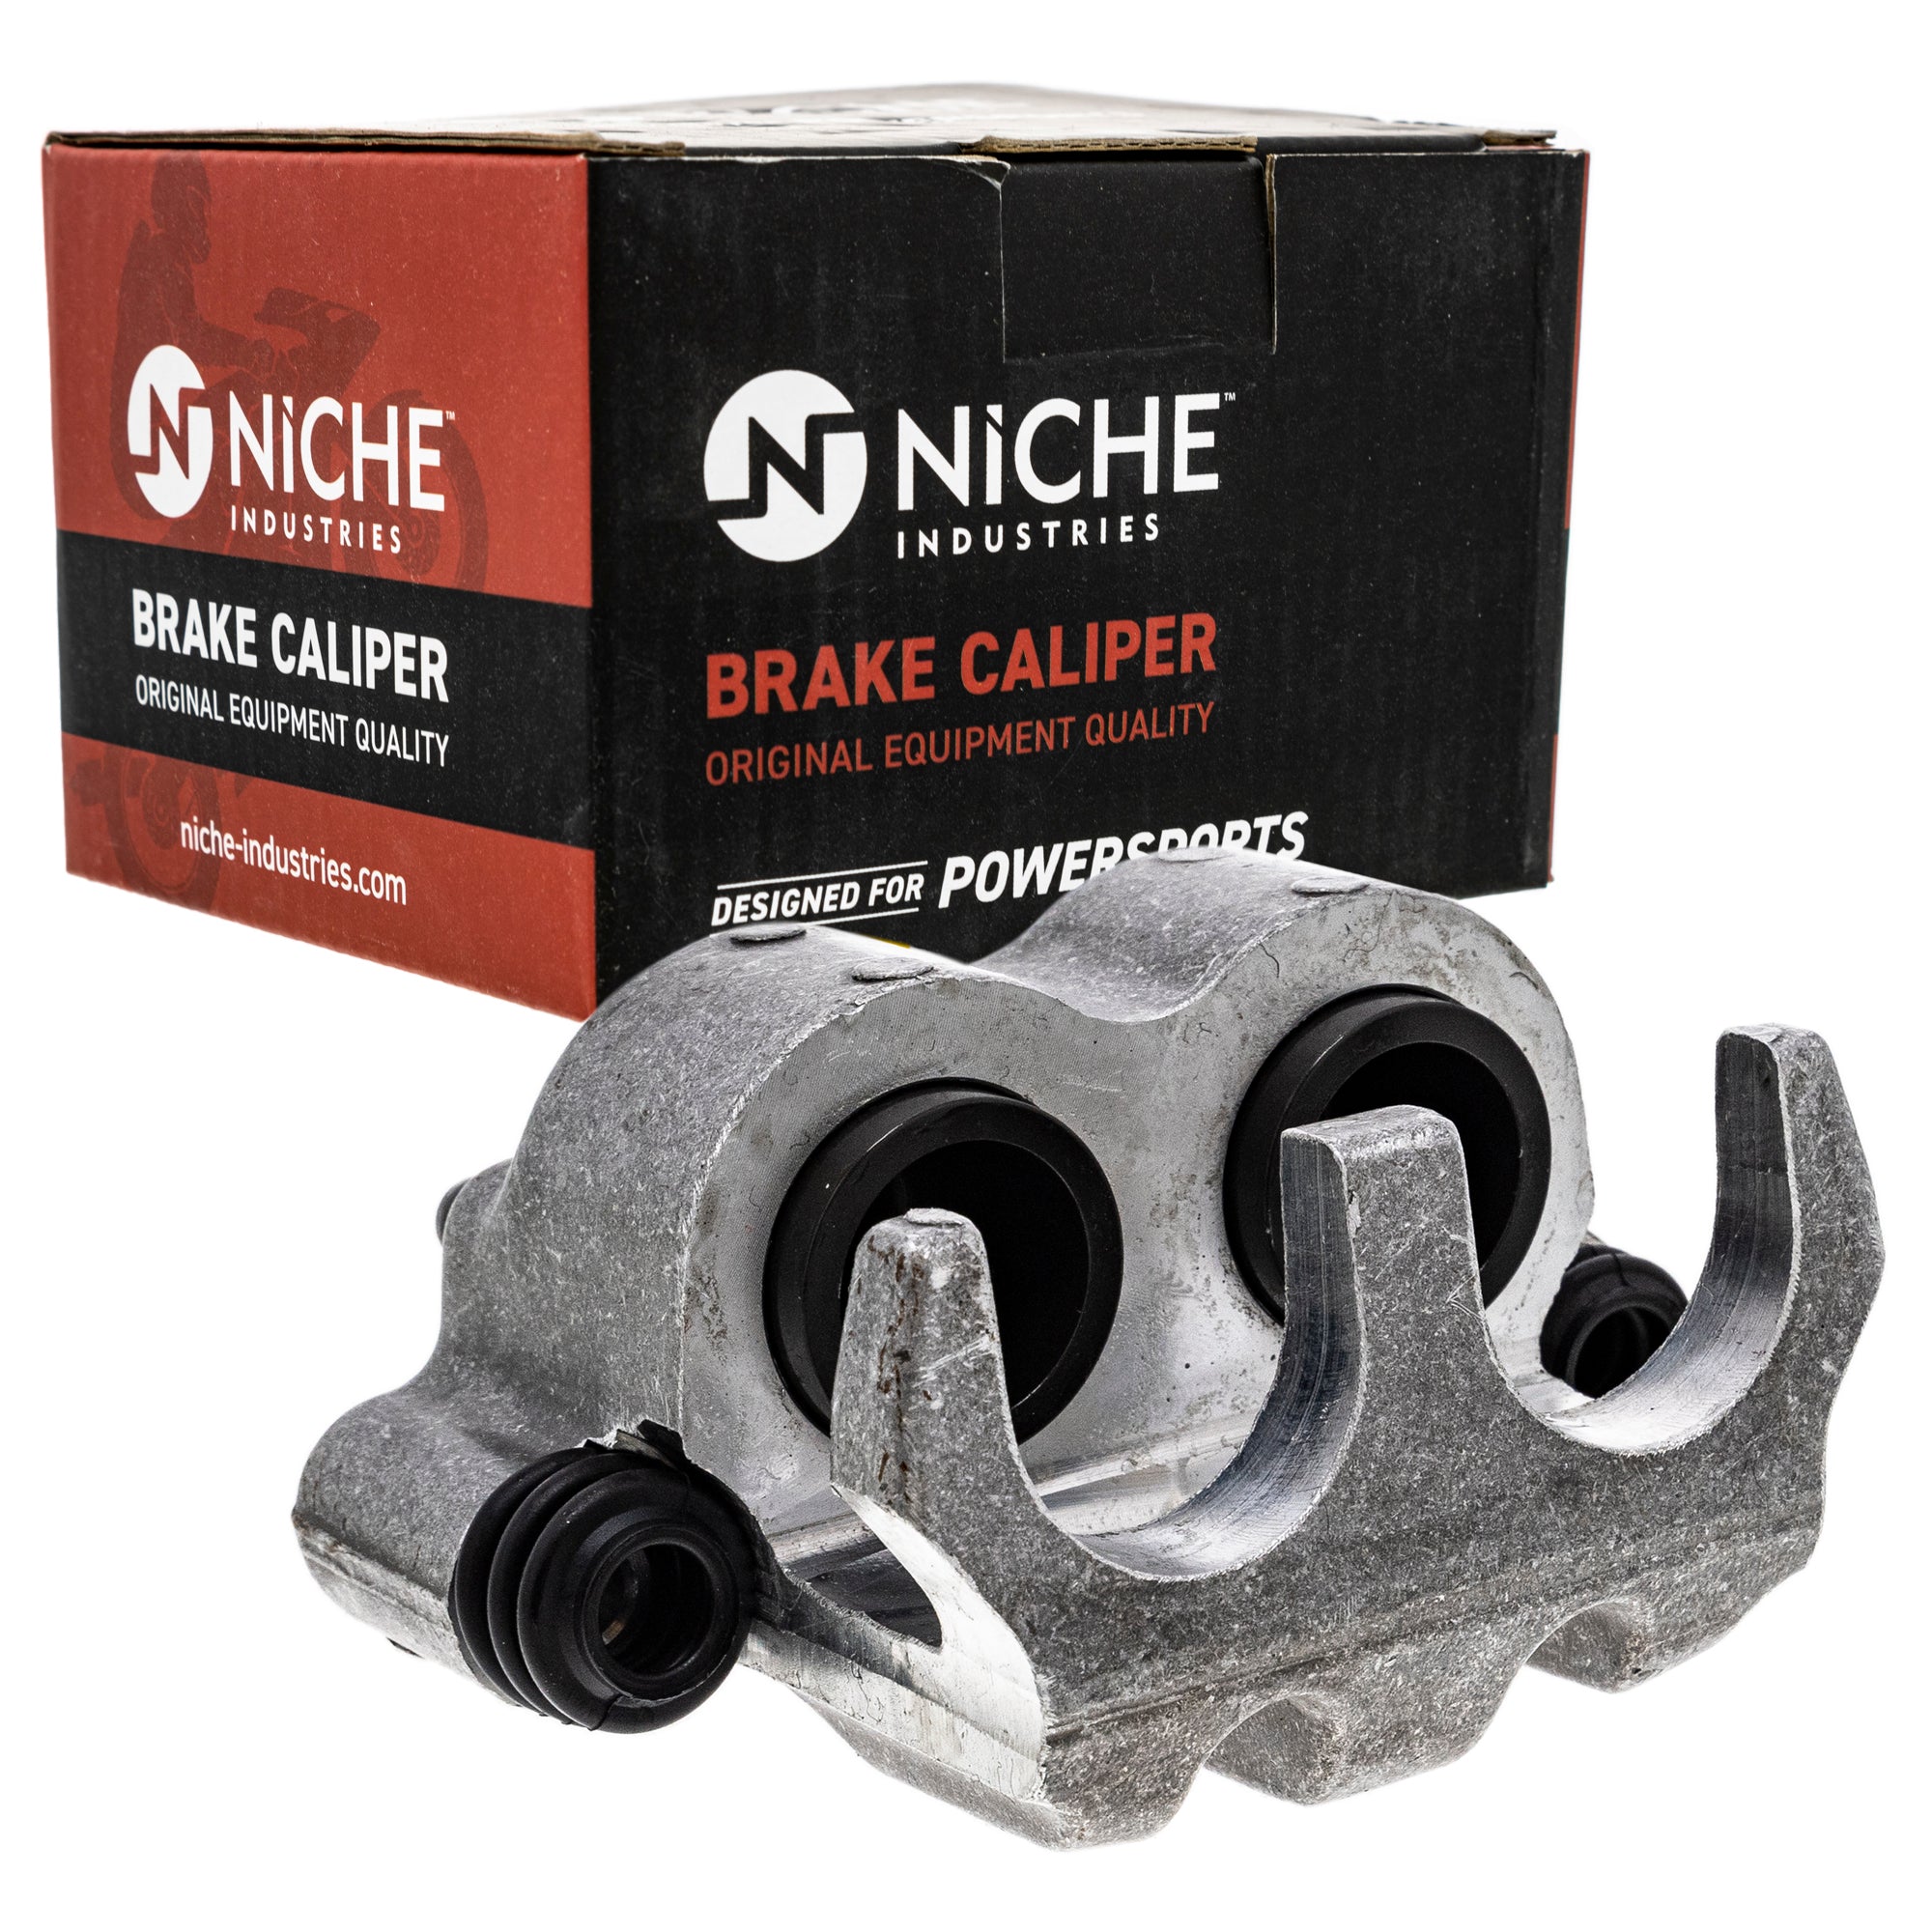 NICHE MK1001049 Brake Caliper Kit